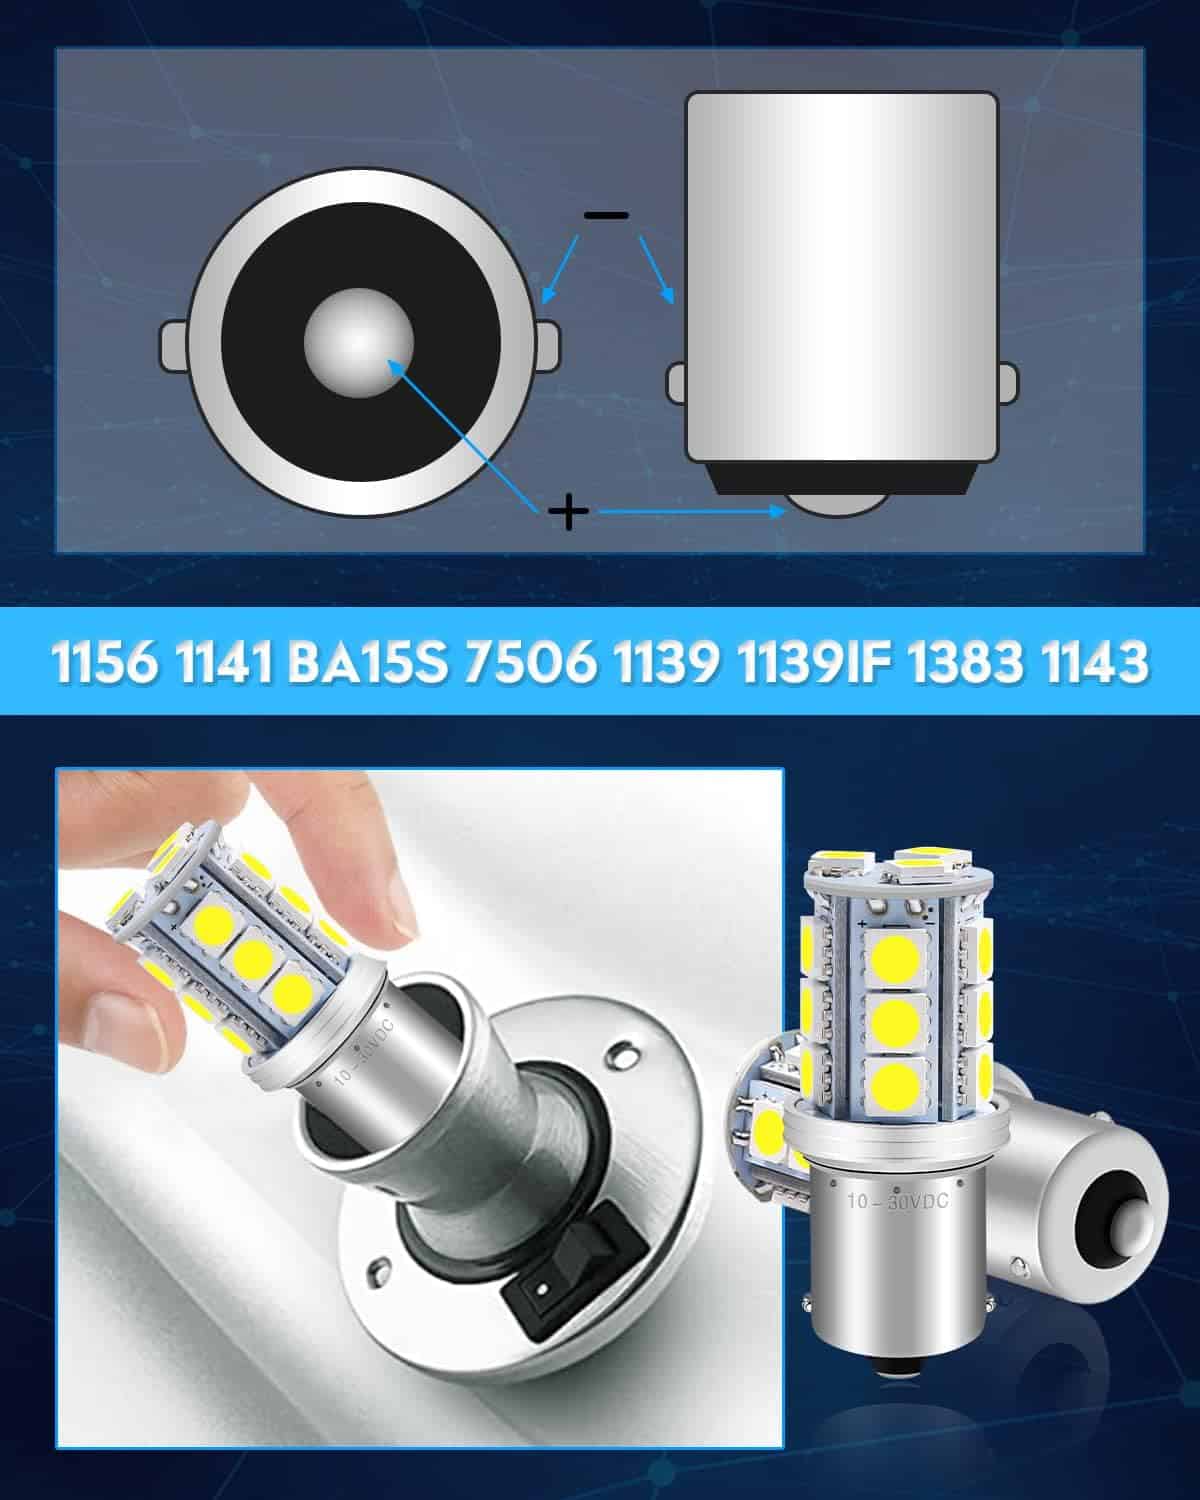 Qoope 1156 LED Bulb Warm White 1141 LED Bulbs RV Light Bulbs Interior 1073 7506 1003 BA15S Bulb for 12V Camper Travel Trailer Boat Motorhome Interior Lights, Pack of 10